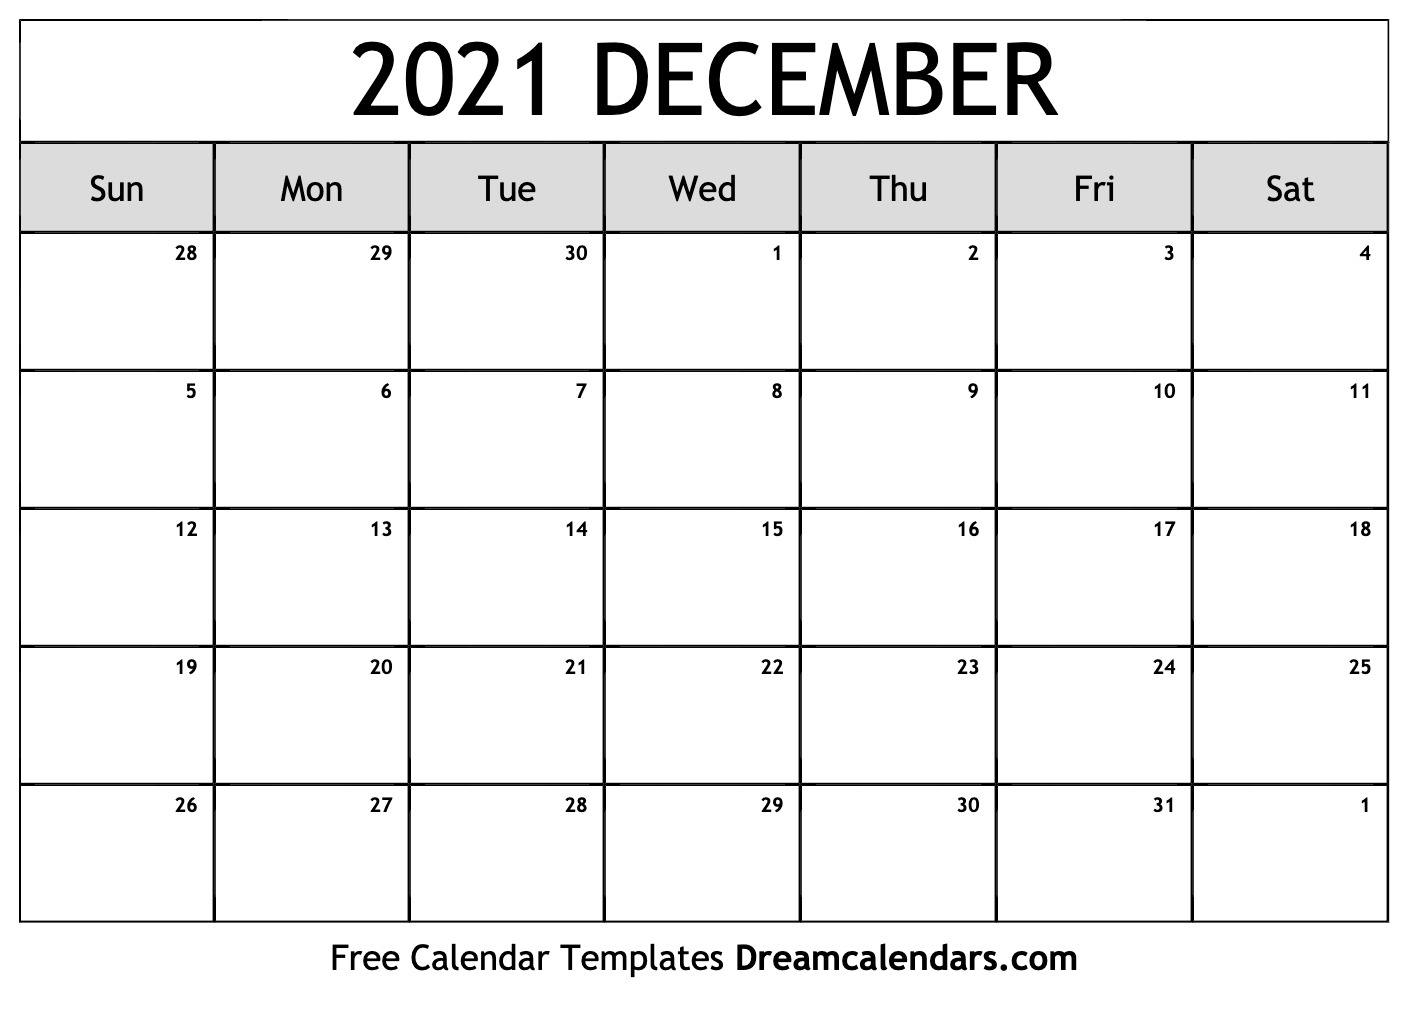 Get December Calender Images 2021